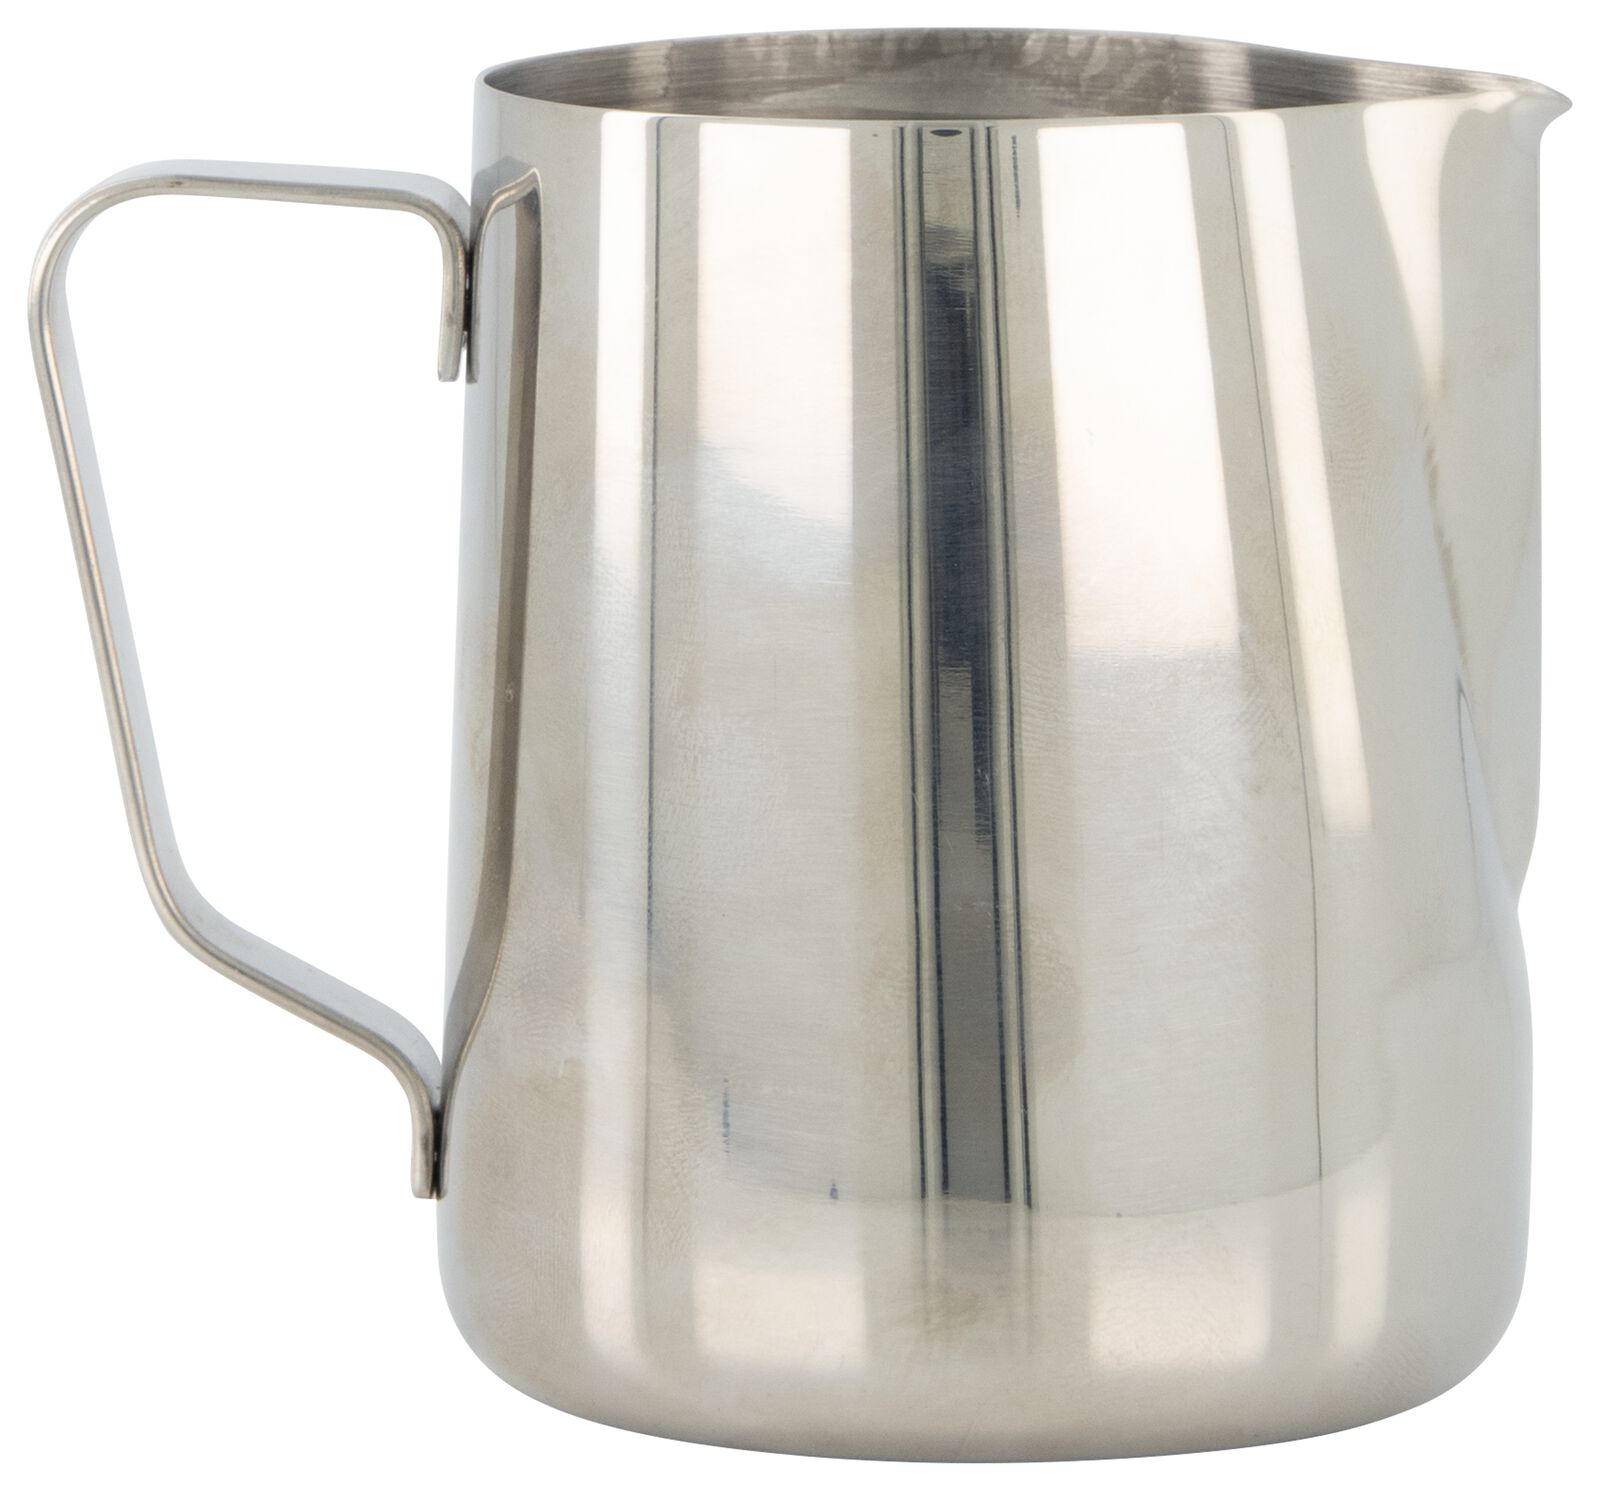 Generic Pot à lait en Inox avec couvercle, théhière à café 600ml à